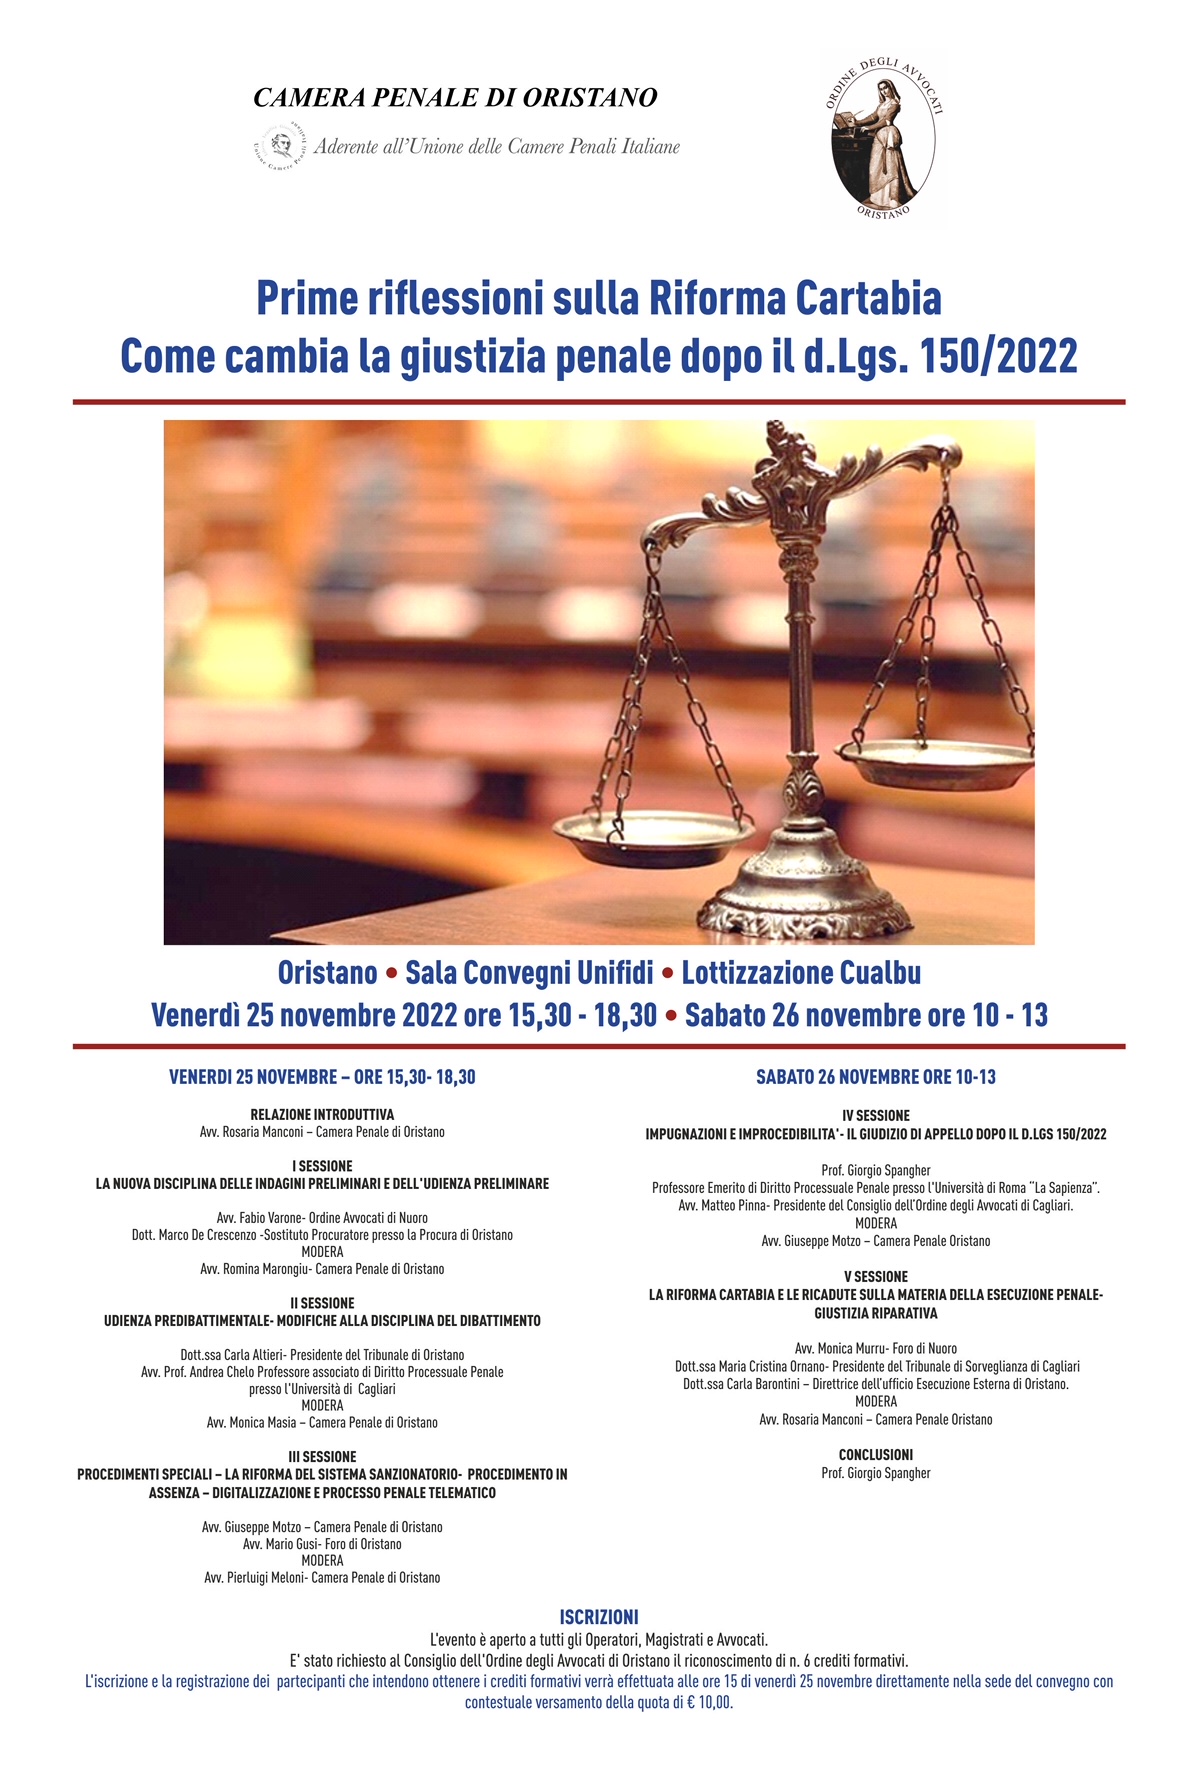 Prime riflessioni sulla Riforma Cartabia. Come cambia la giustizia penale dopo il d.Lgs. 150/2022